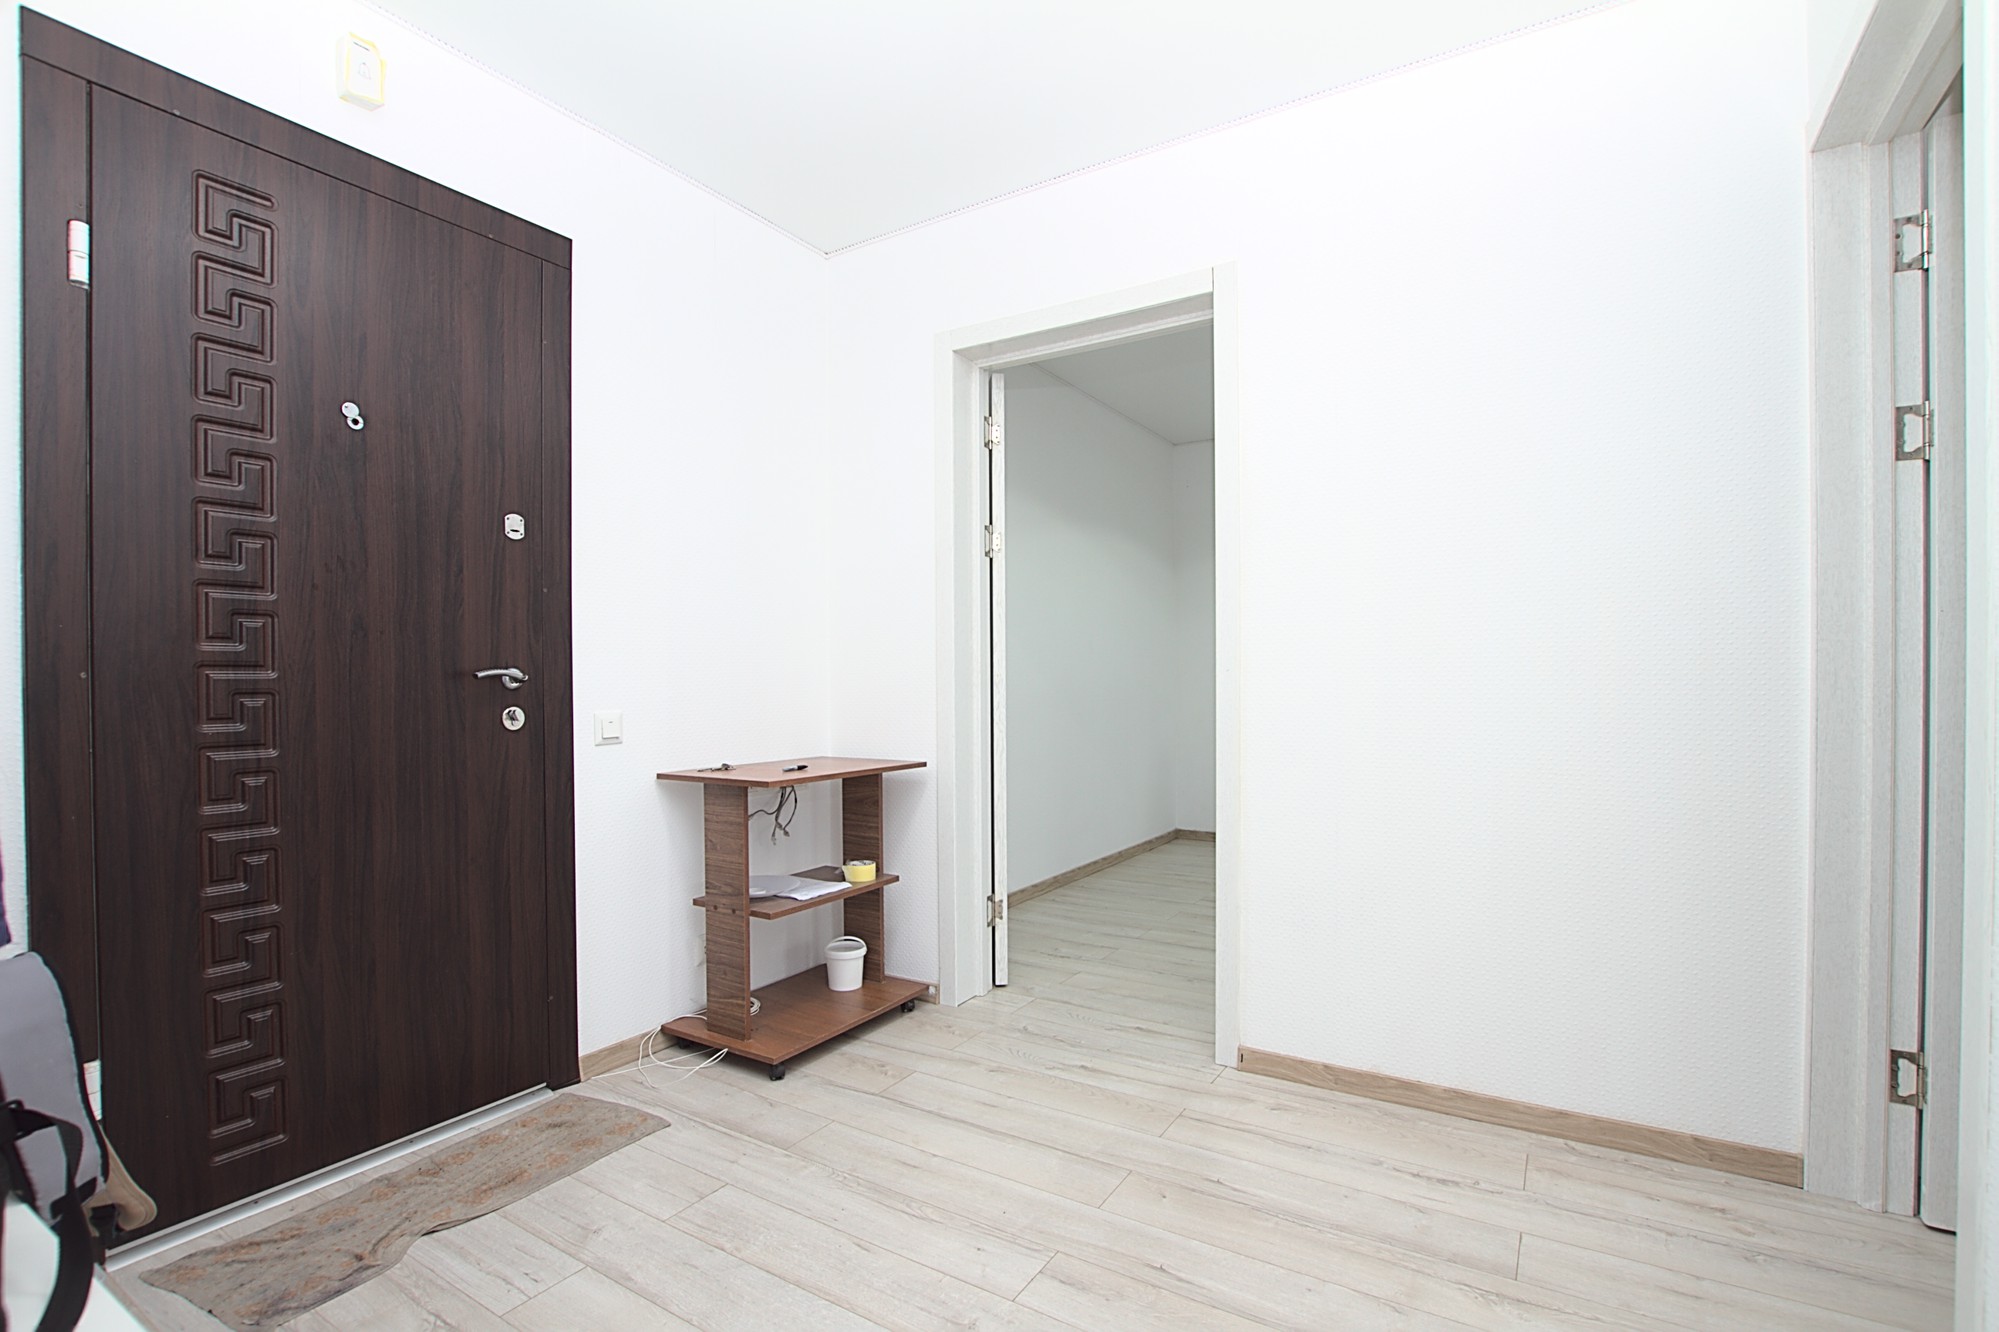 Botanica Suite es un apartamento de 2 habitaciones en alquiler en Chisinau, Moldova